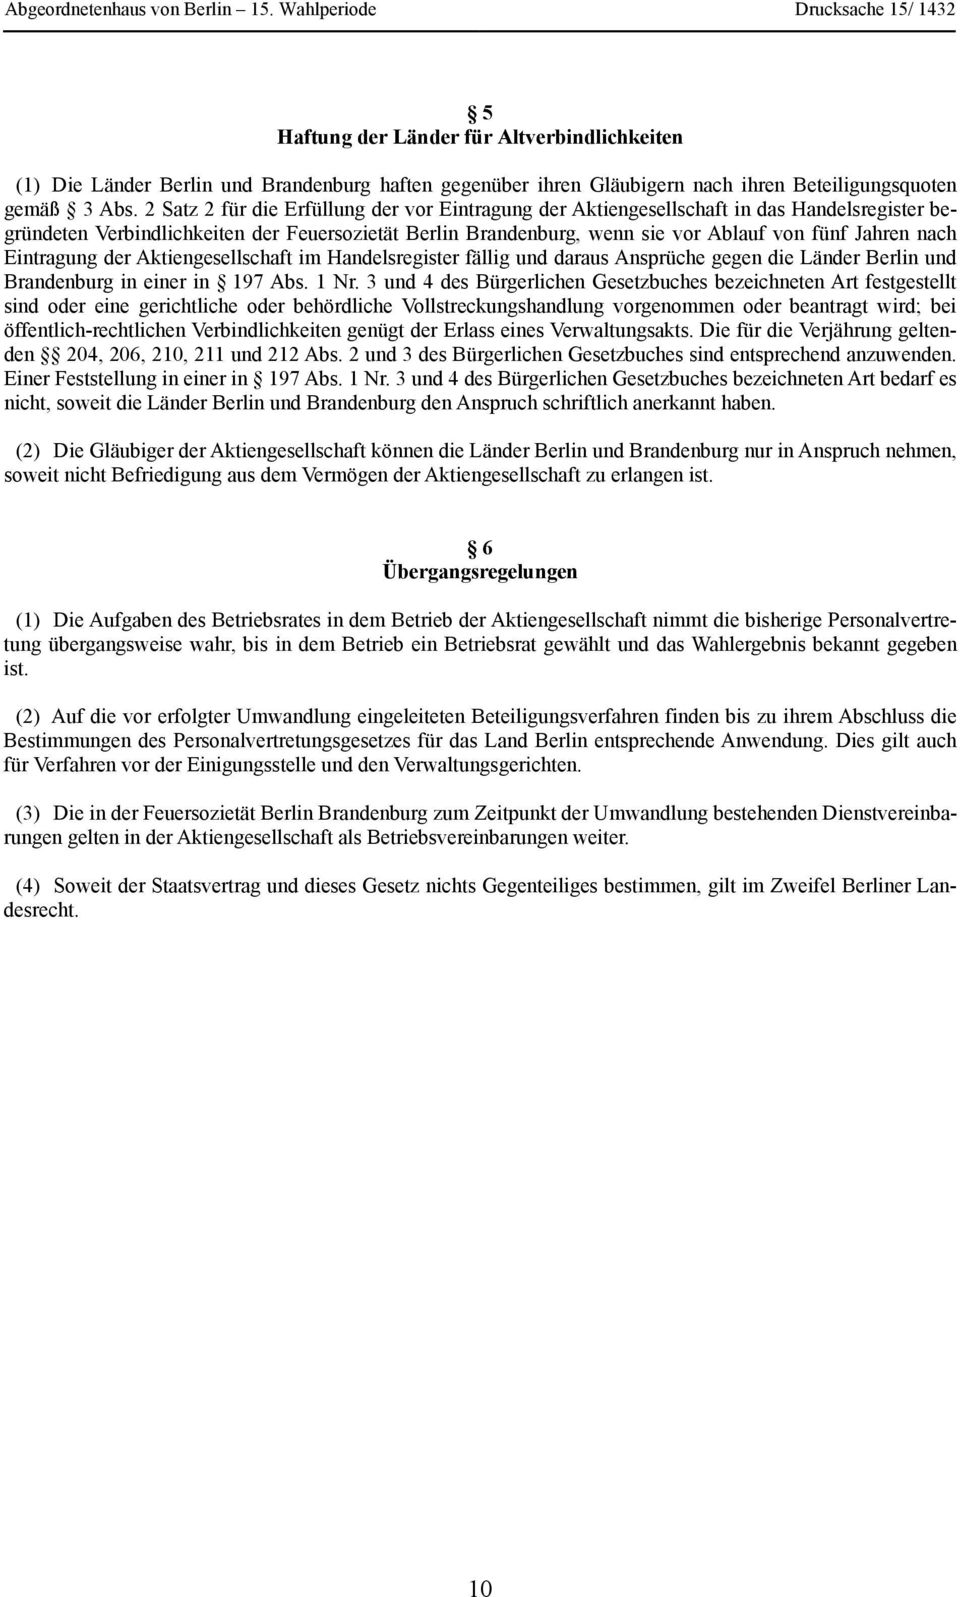 nach Eintragung der Aktiengesellschaft im Handelsregister fällig und daraus Ansprüche gegen die Länder Berlin und Brandenburg in einer in 197 Abs. 1 Nr.